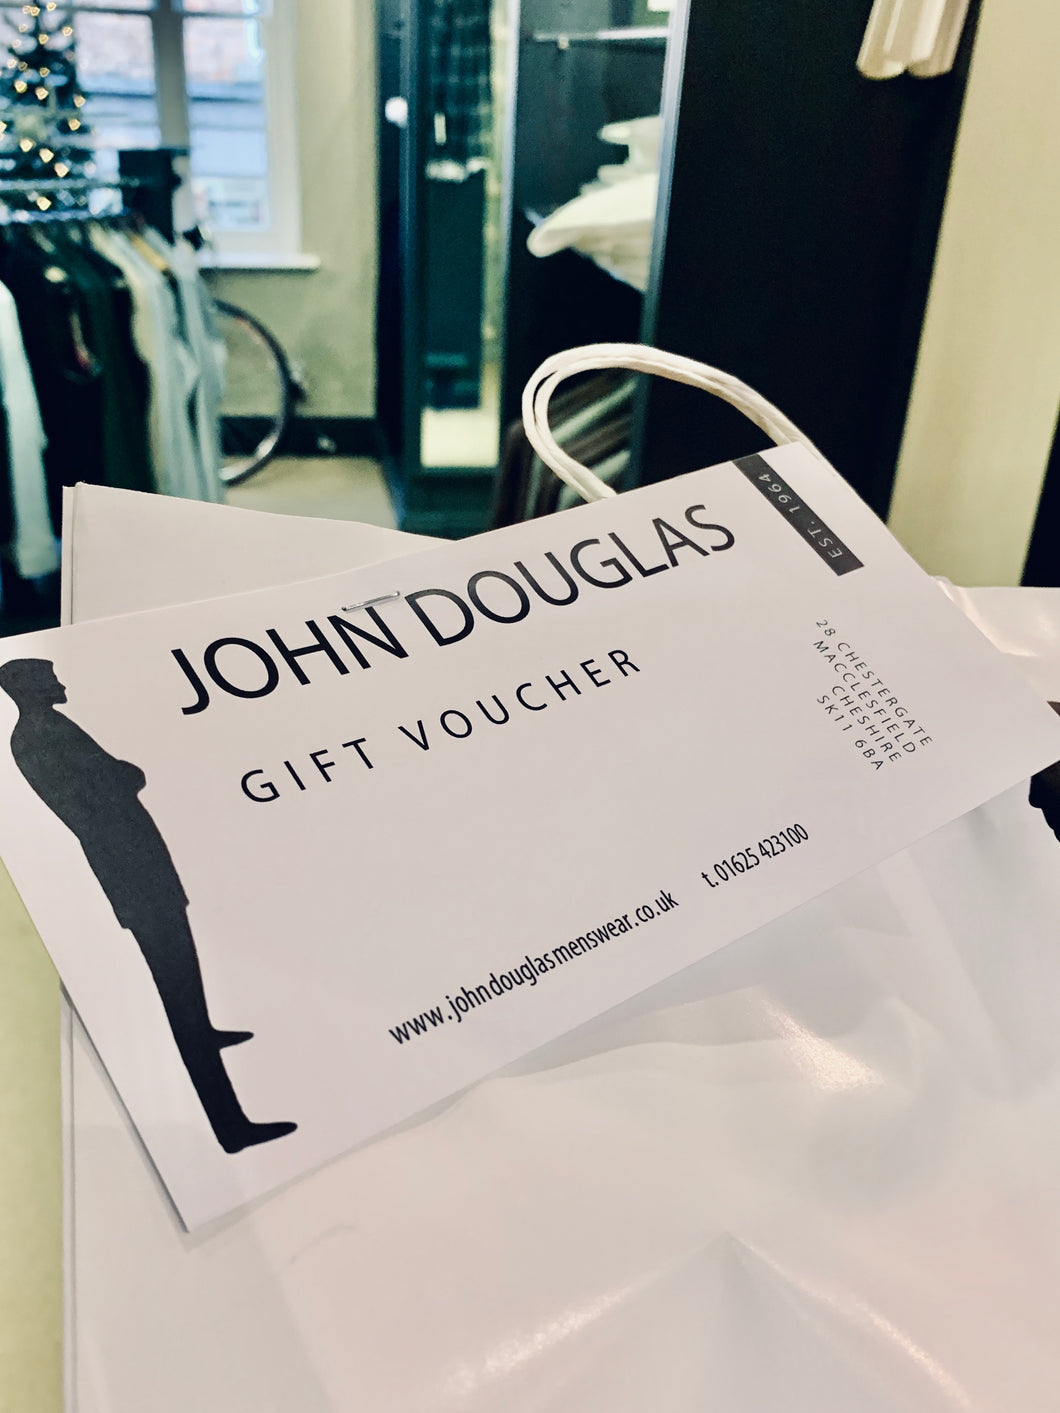 John Douglas Gift Voucher - John Douglas Online